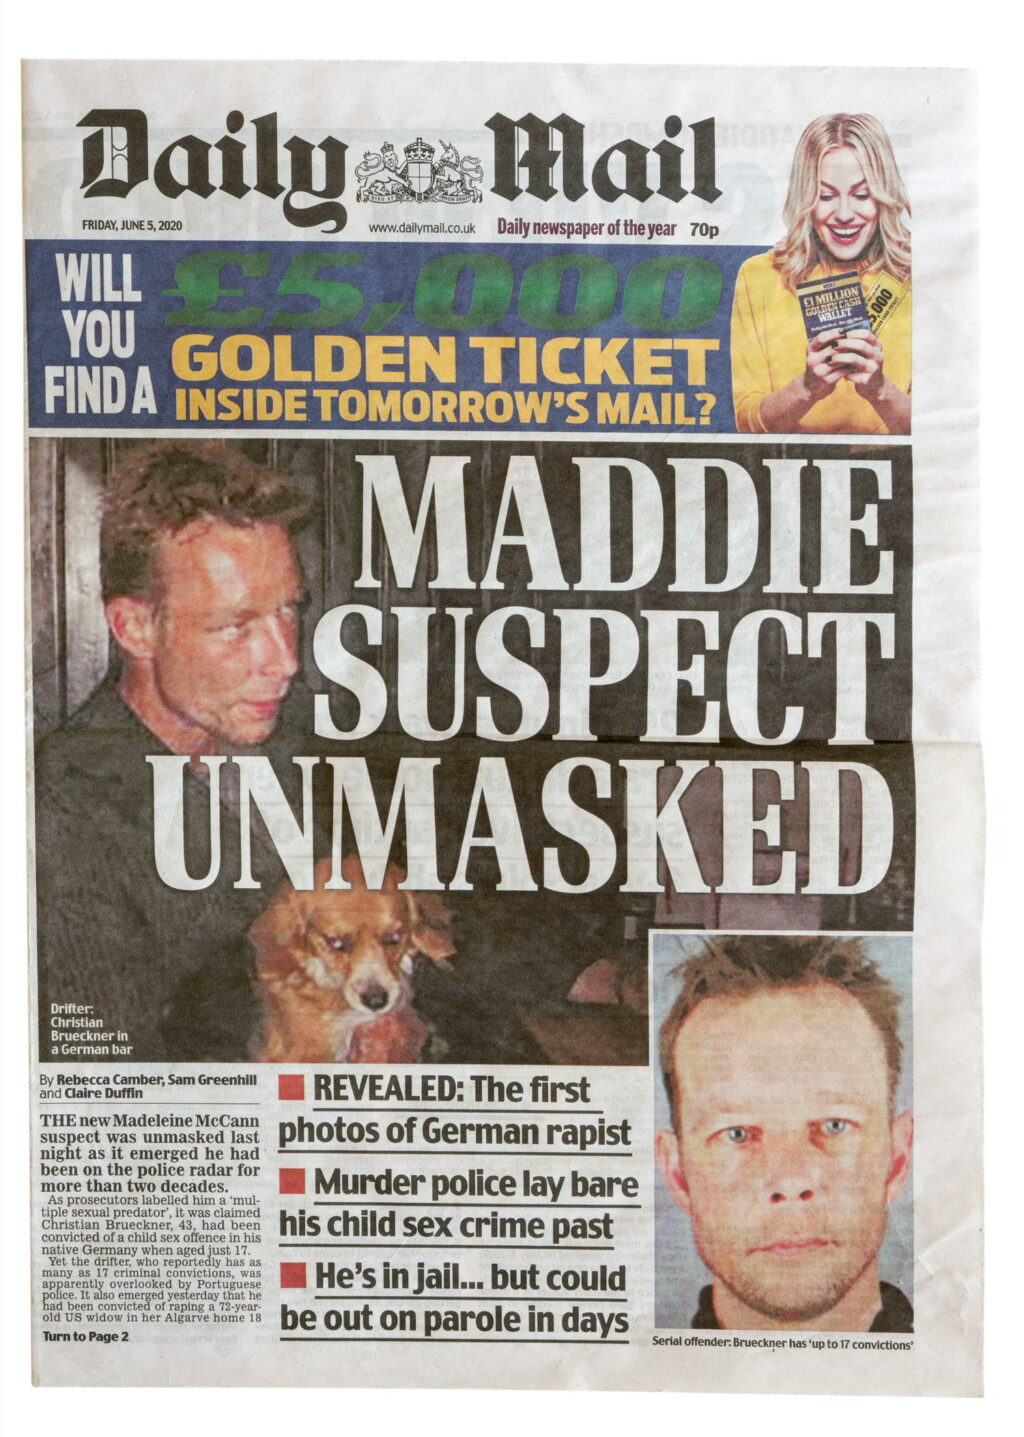 Affaire Maddie : le principal suspect revendique un alibi